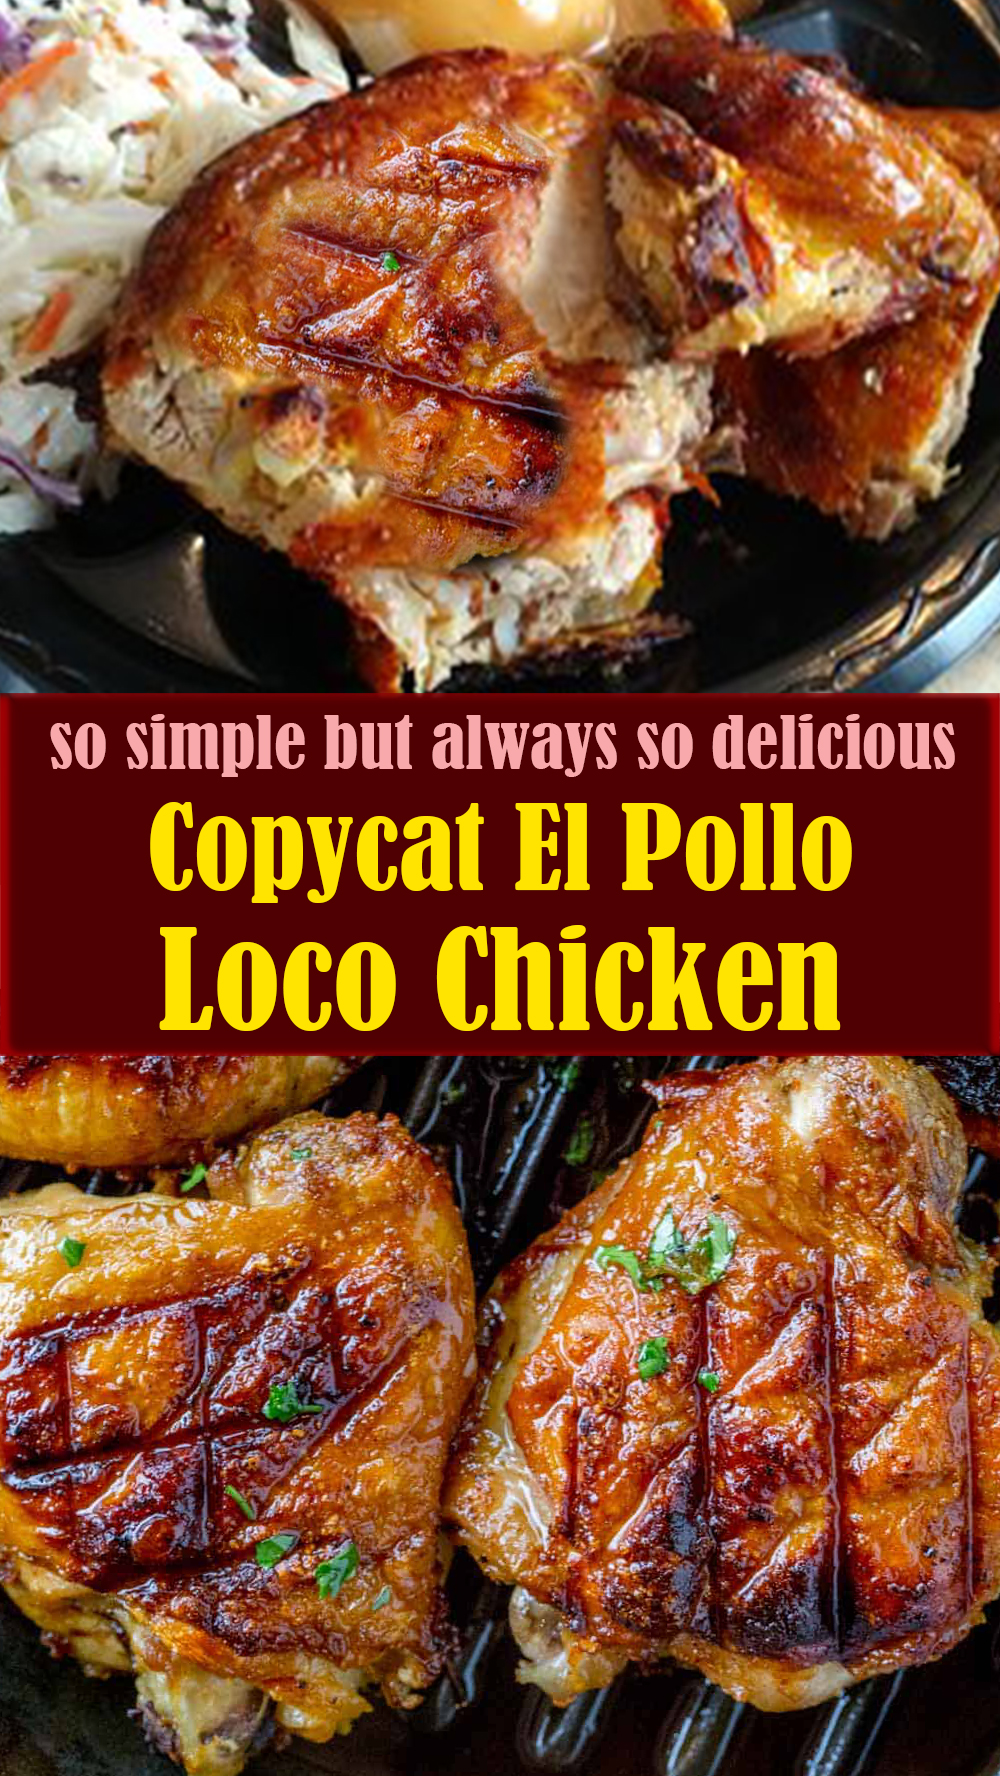 Copycat El Pollo Loco Chicken